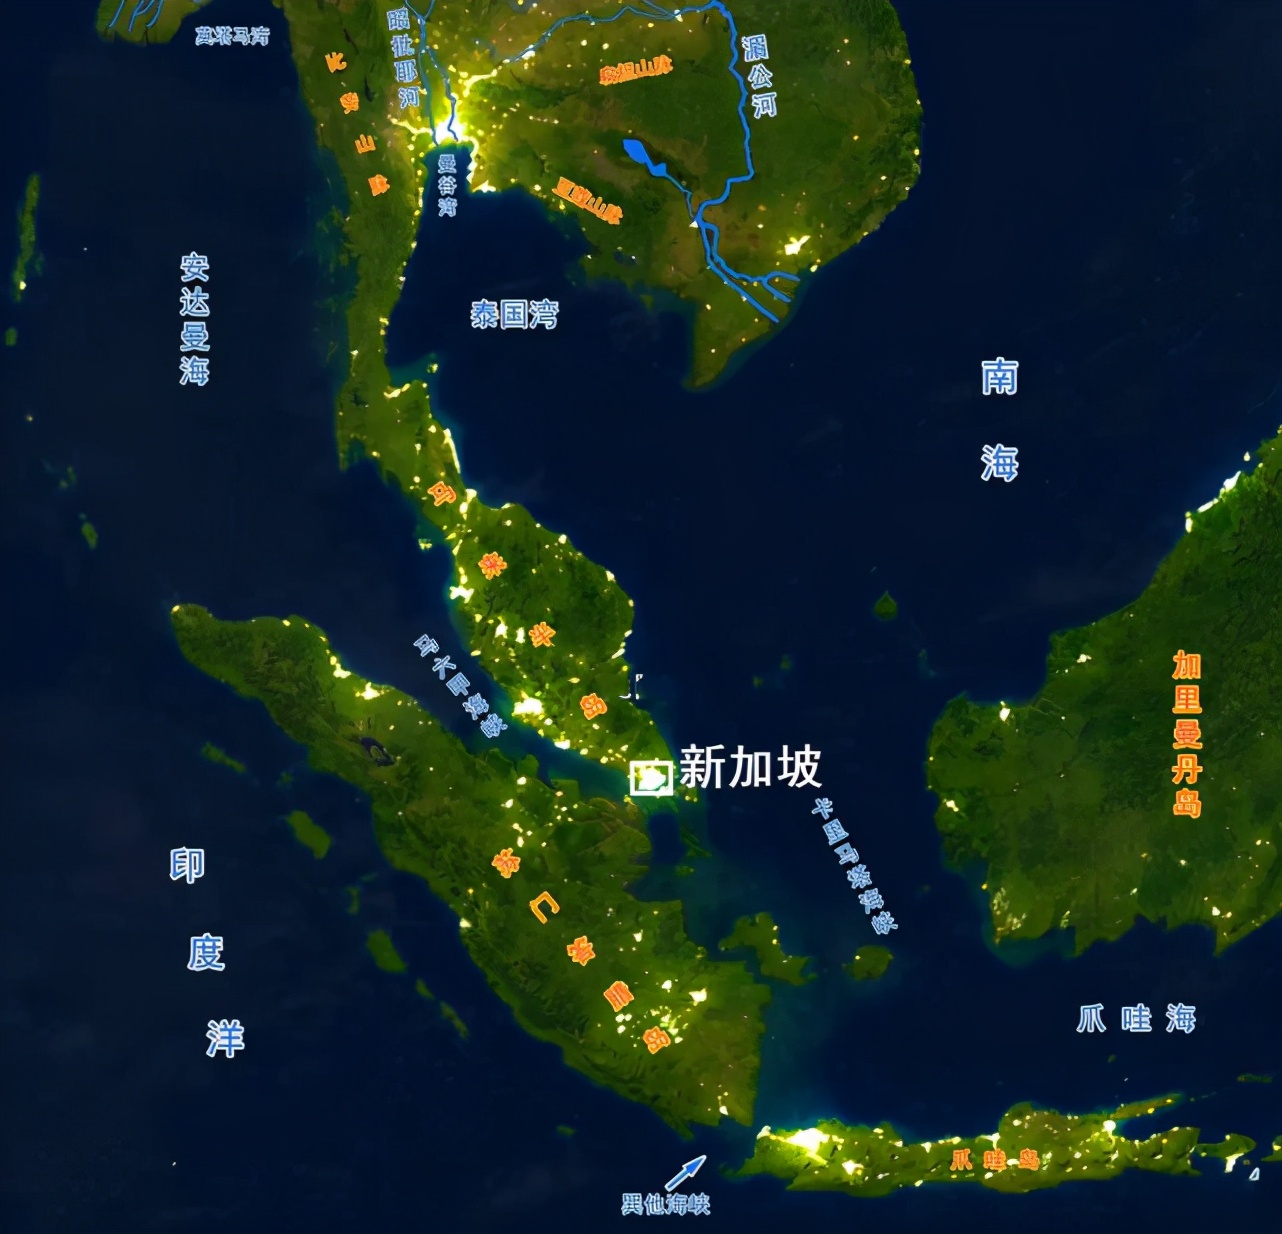 环太平洋势力如何划分？东亚势力比较平衡，澳大利亚独霸南太平洋